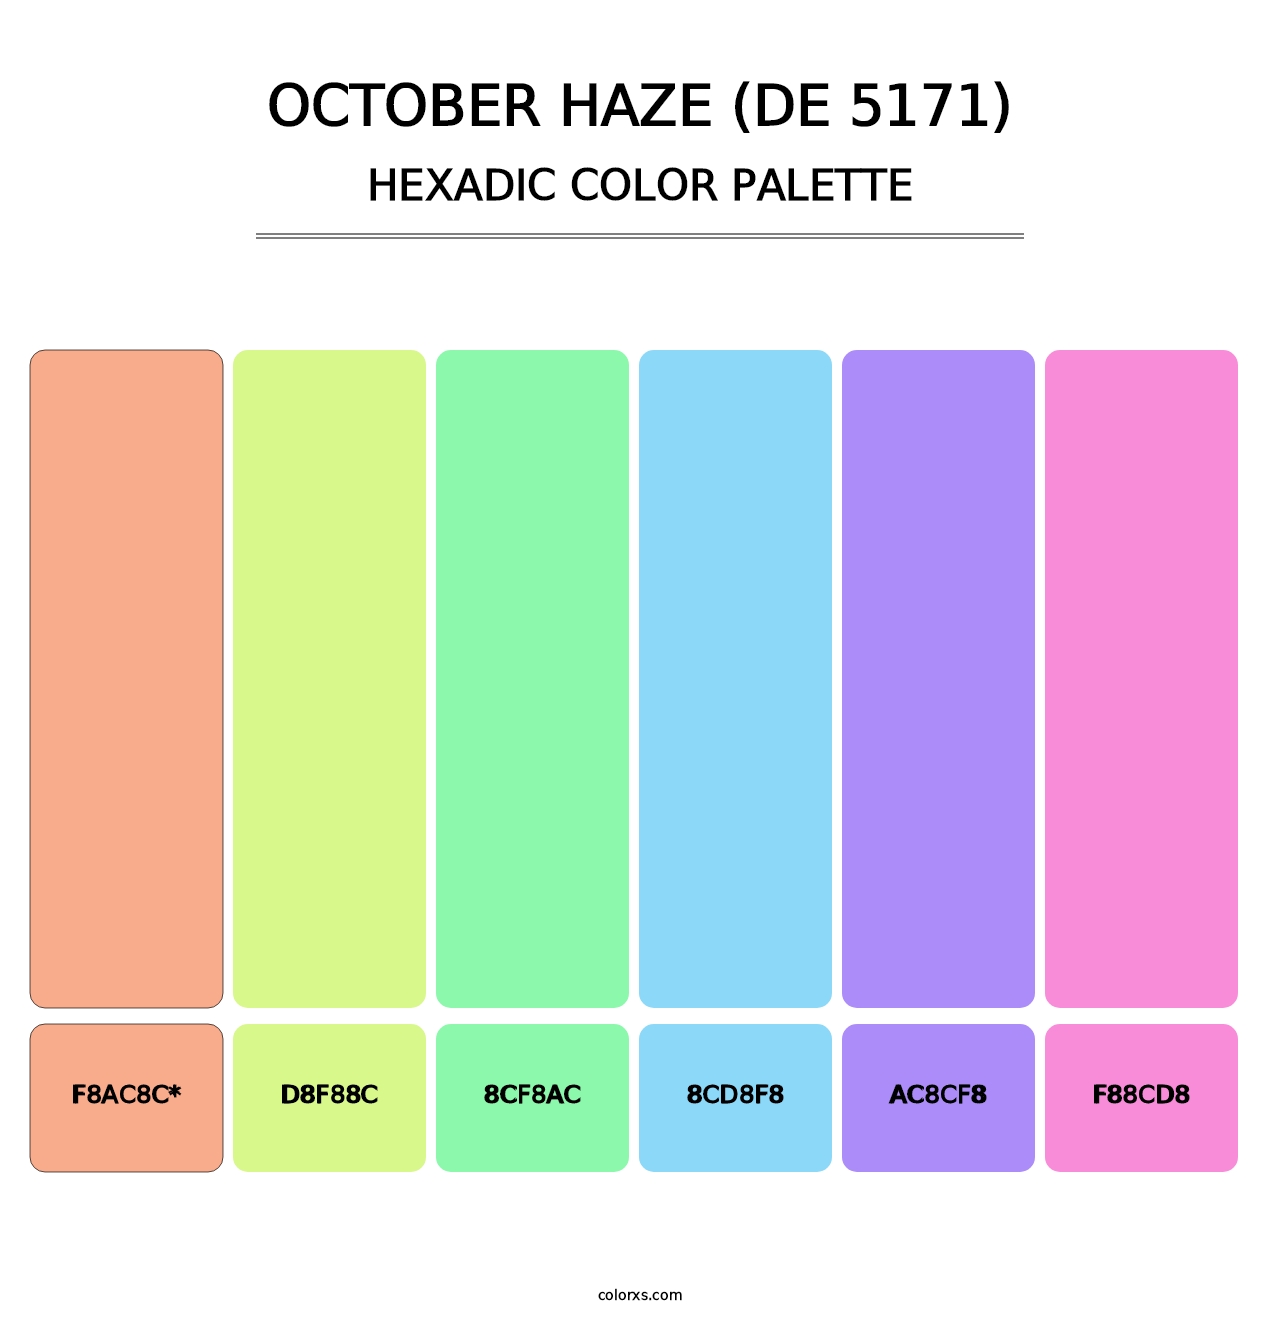 October Haze (DE 5171) - Hexadic Color Palette